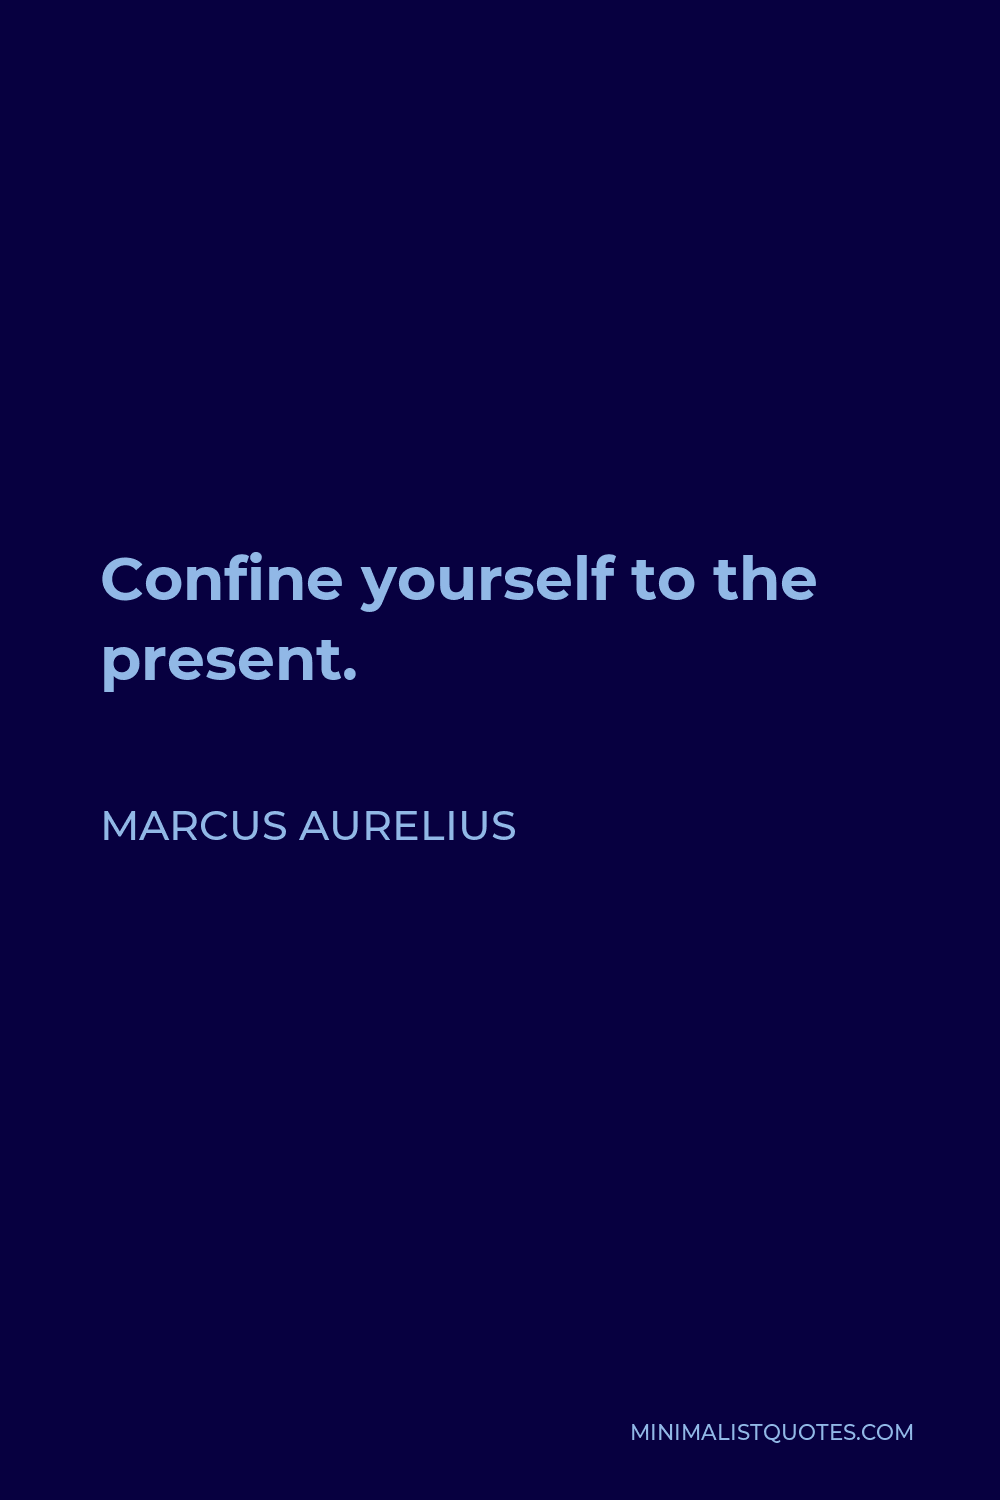 Marcus Aurelius Quote - Confine yourself to the present.